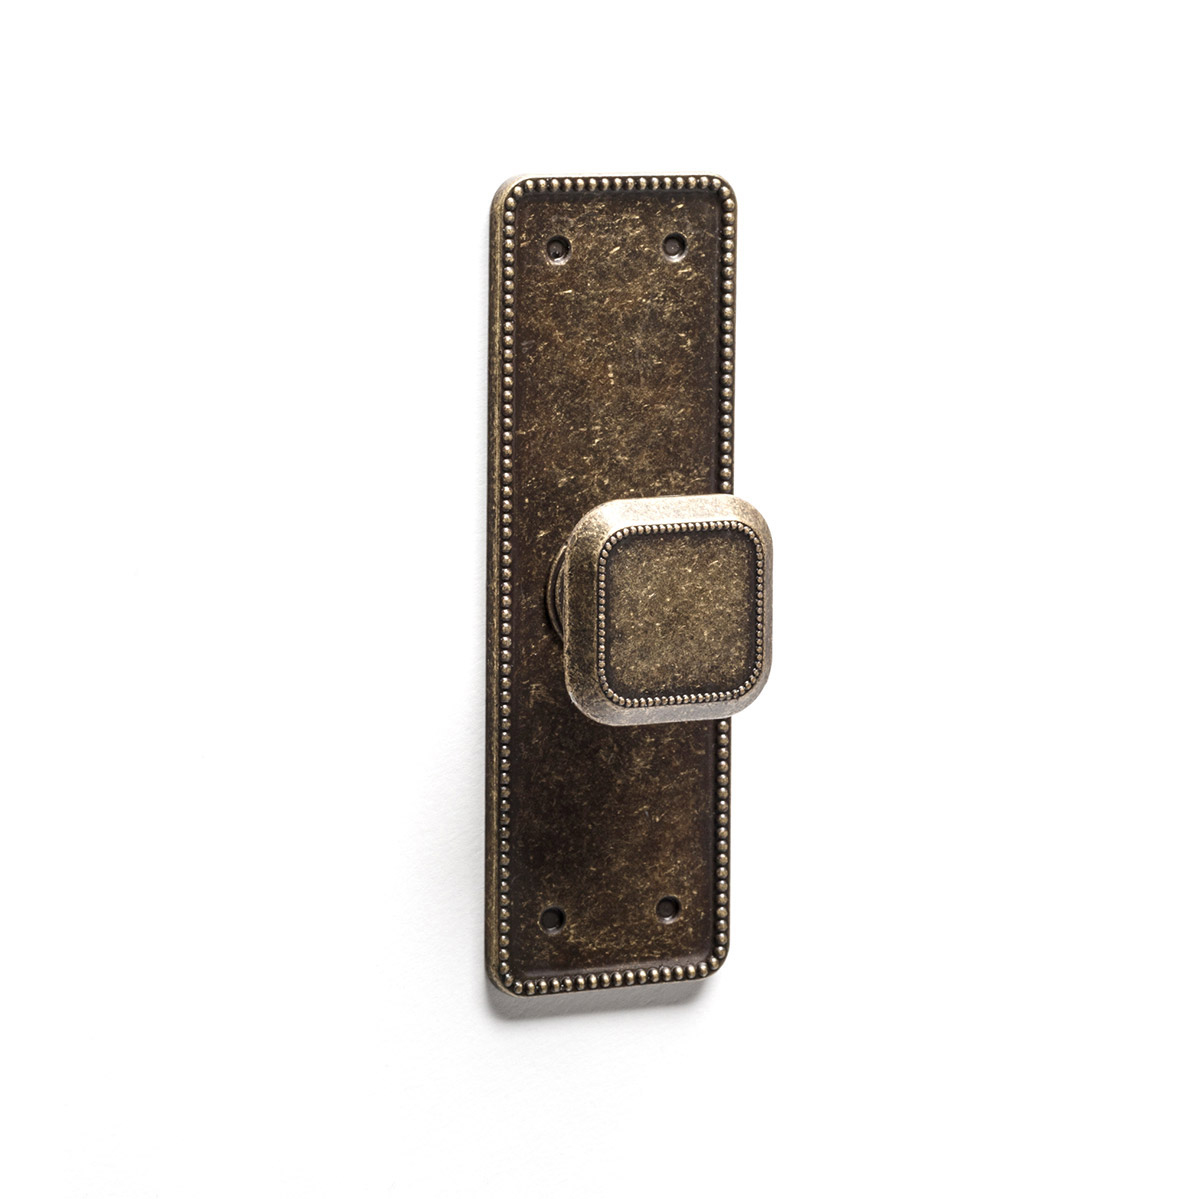 Pomo en placa con acabado cuero viejo de zamak, dimensiones: 110x35x24mm